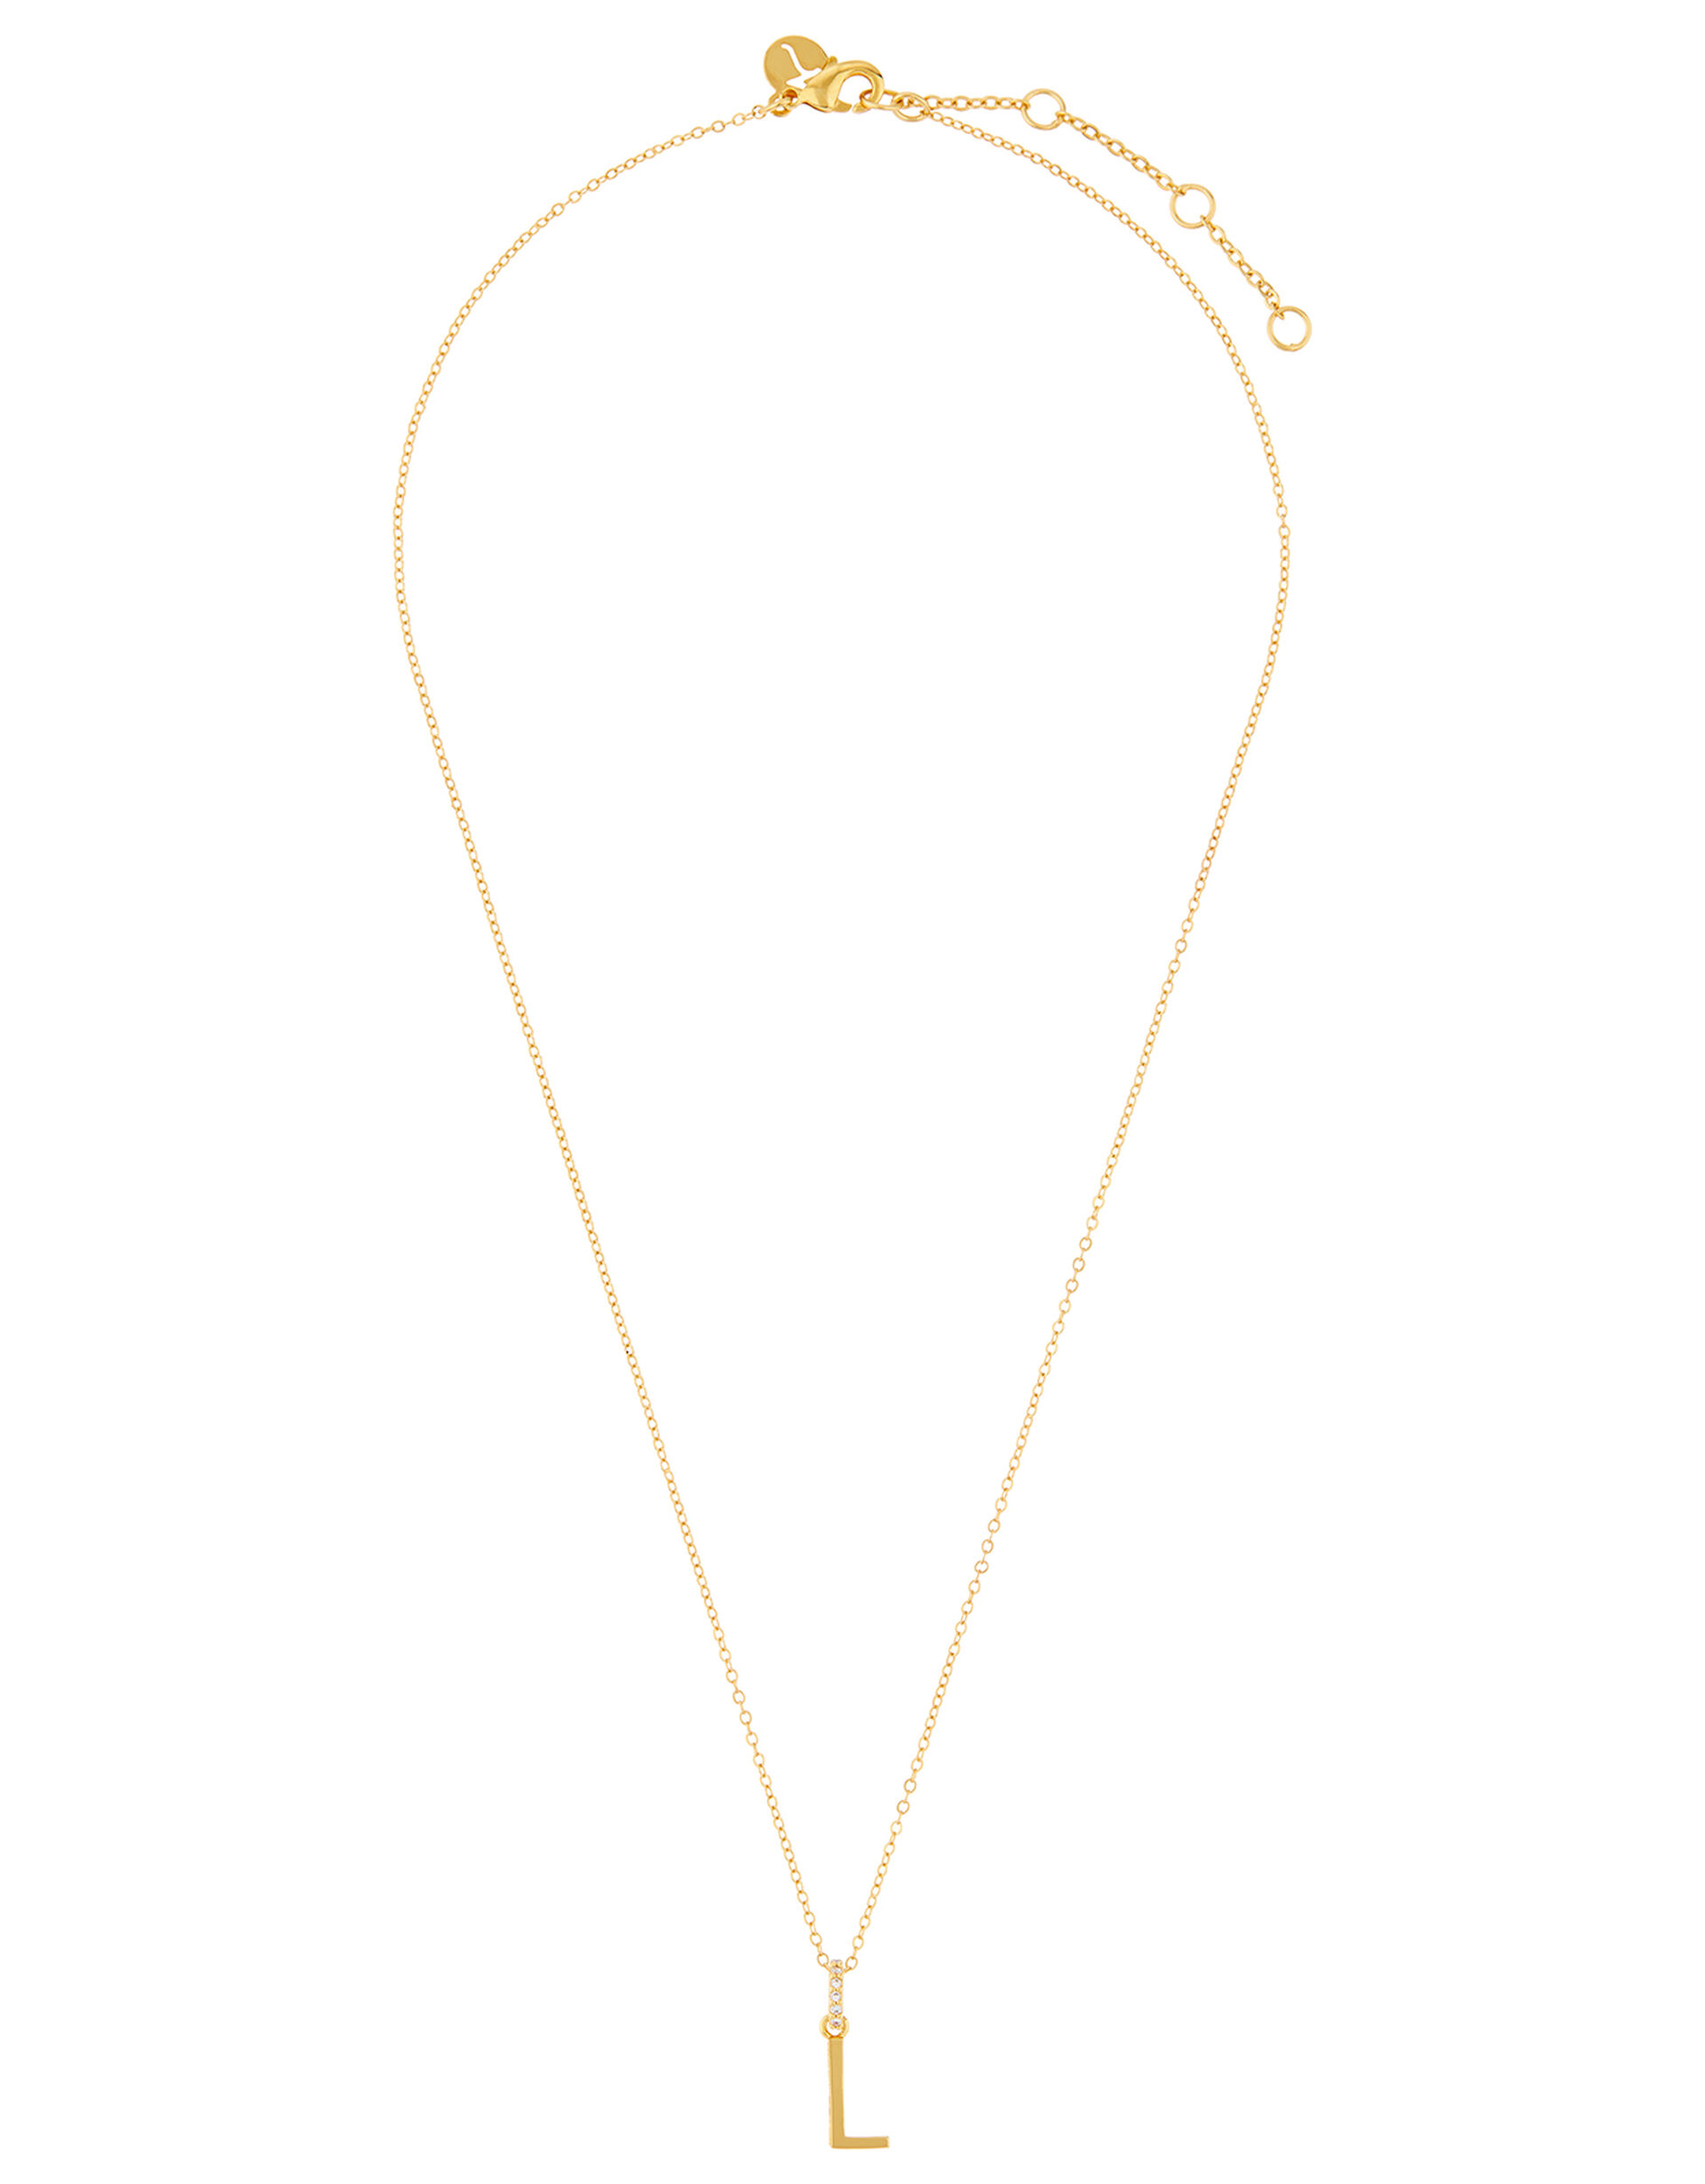 Sparkle Initial Necklace - L, , large